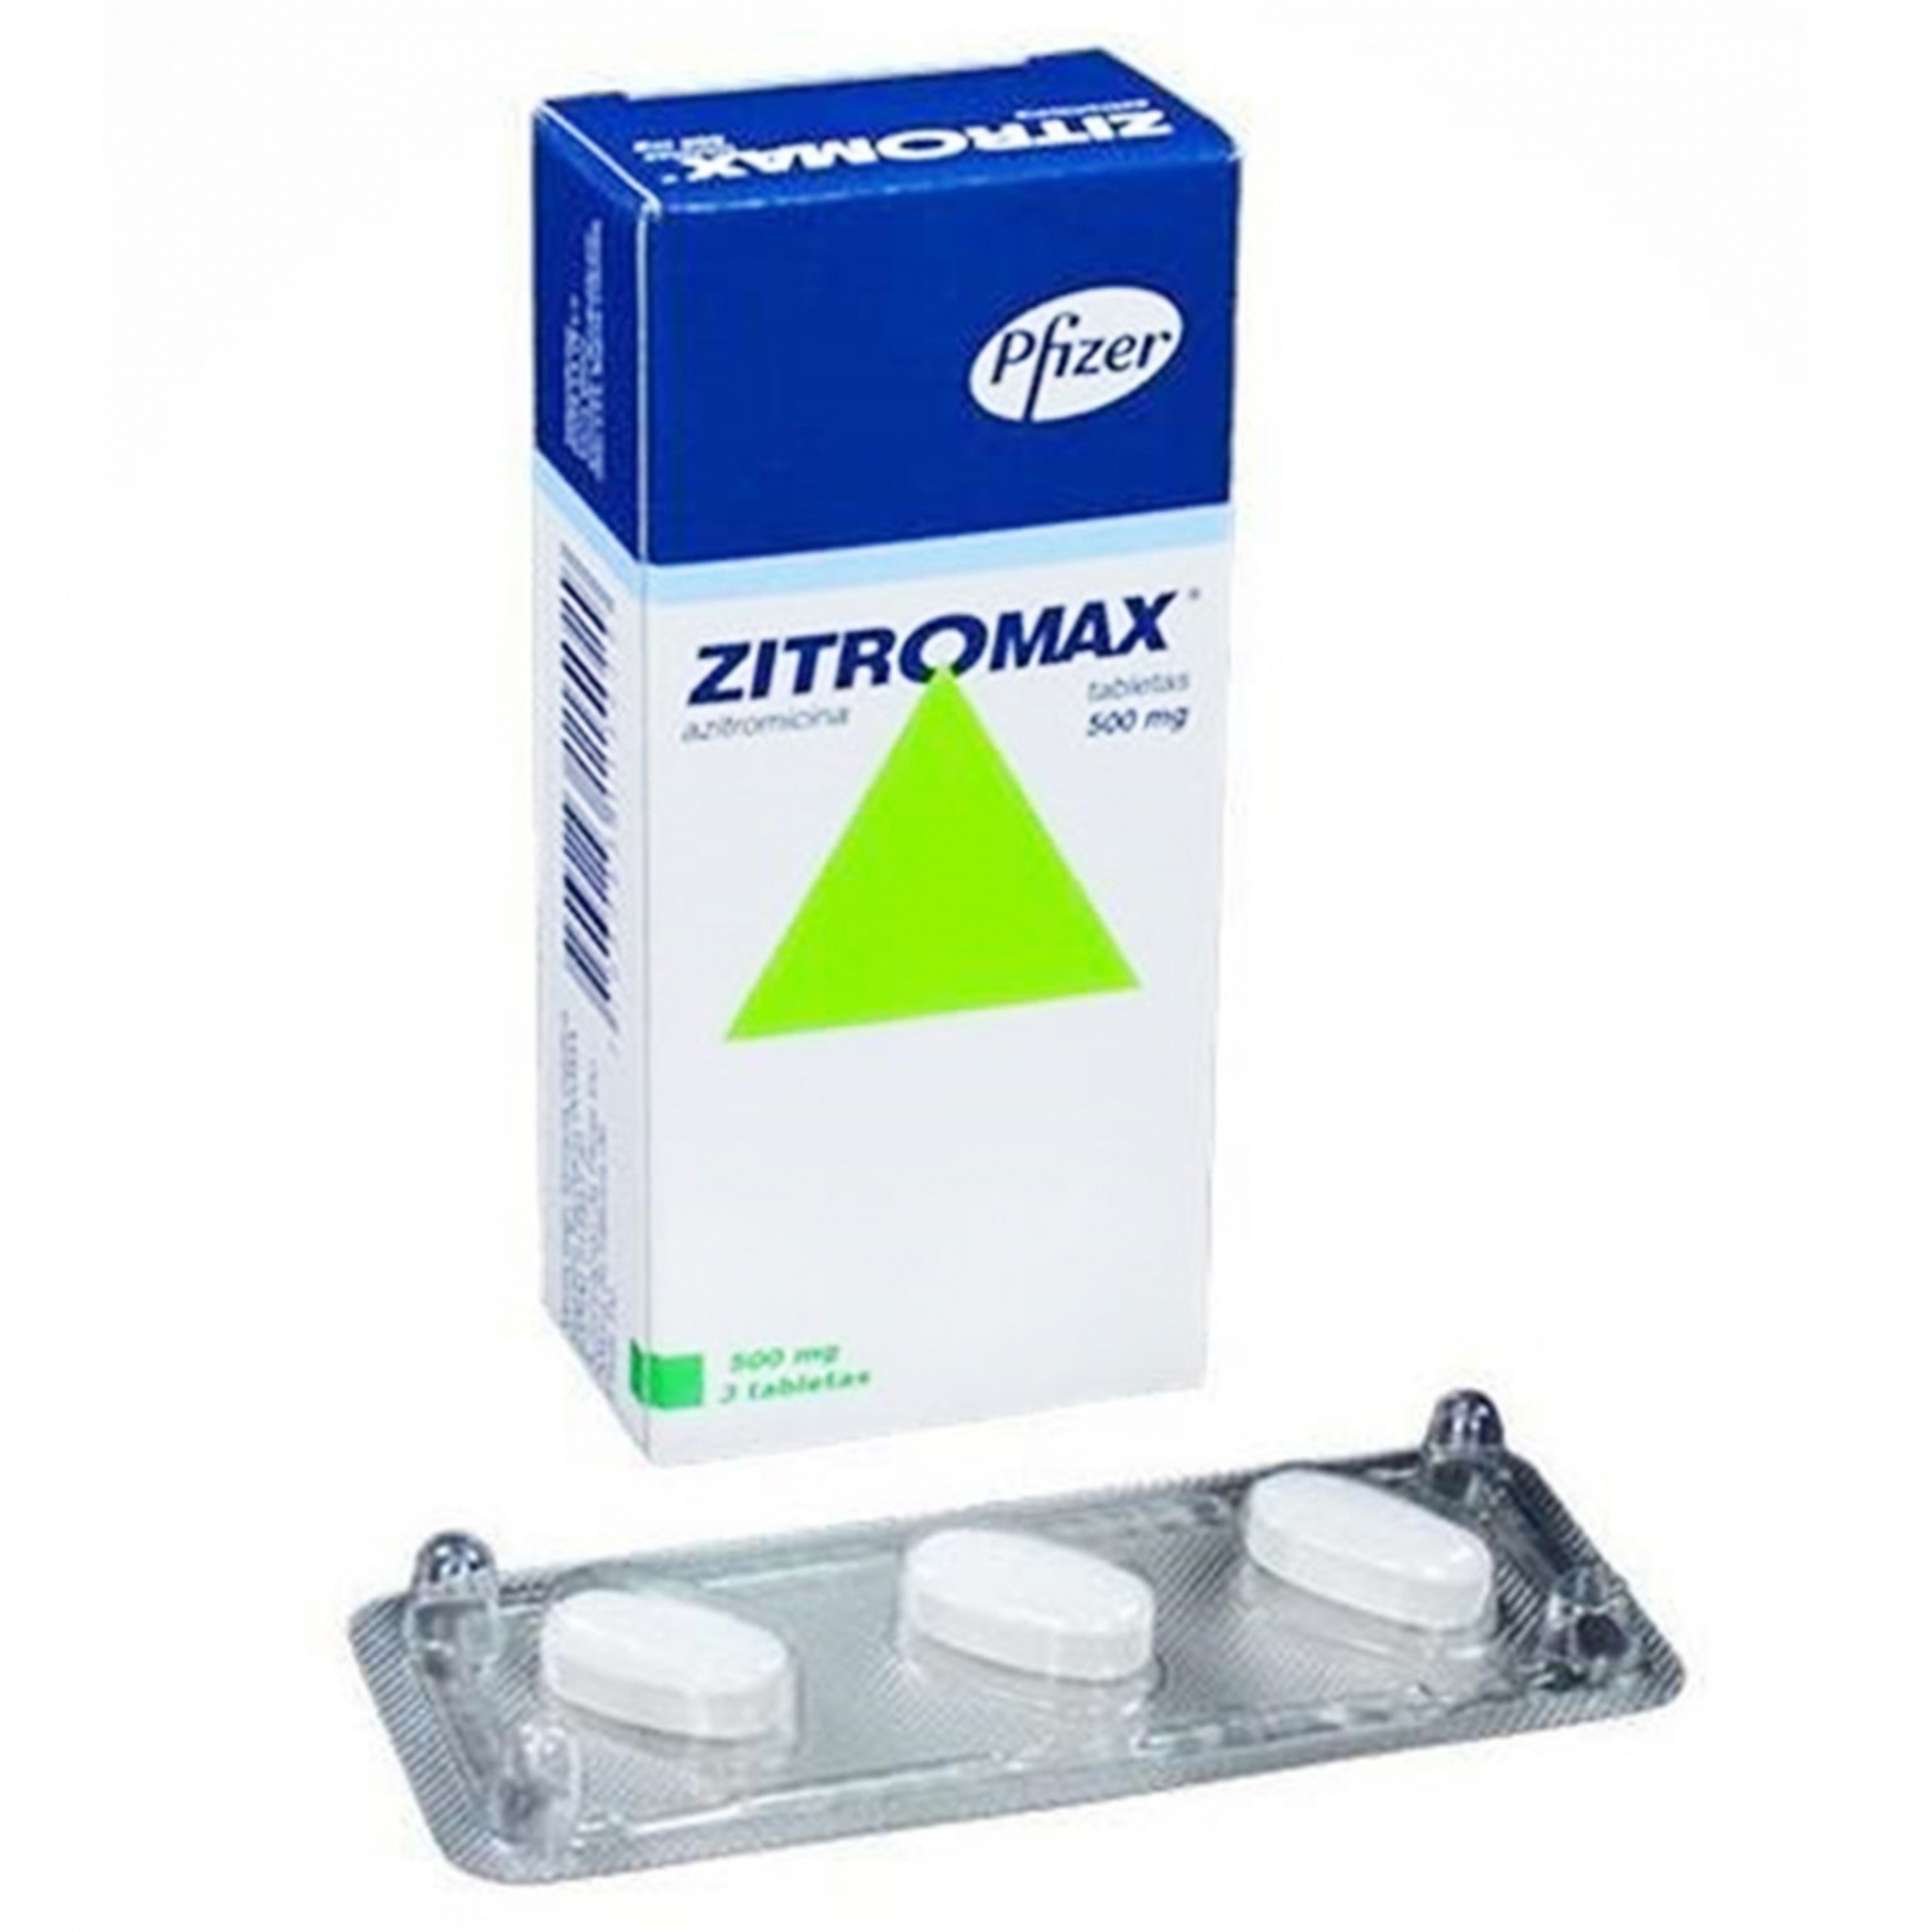 Thuốc Zitromax 500mg Pfizer điều trị các chứng nhiễm khuẩn (1 vỉ x 3 viên)